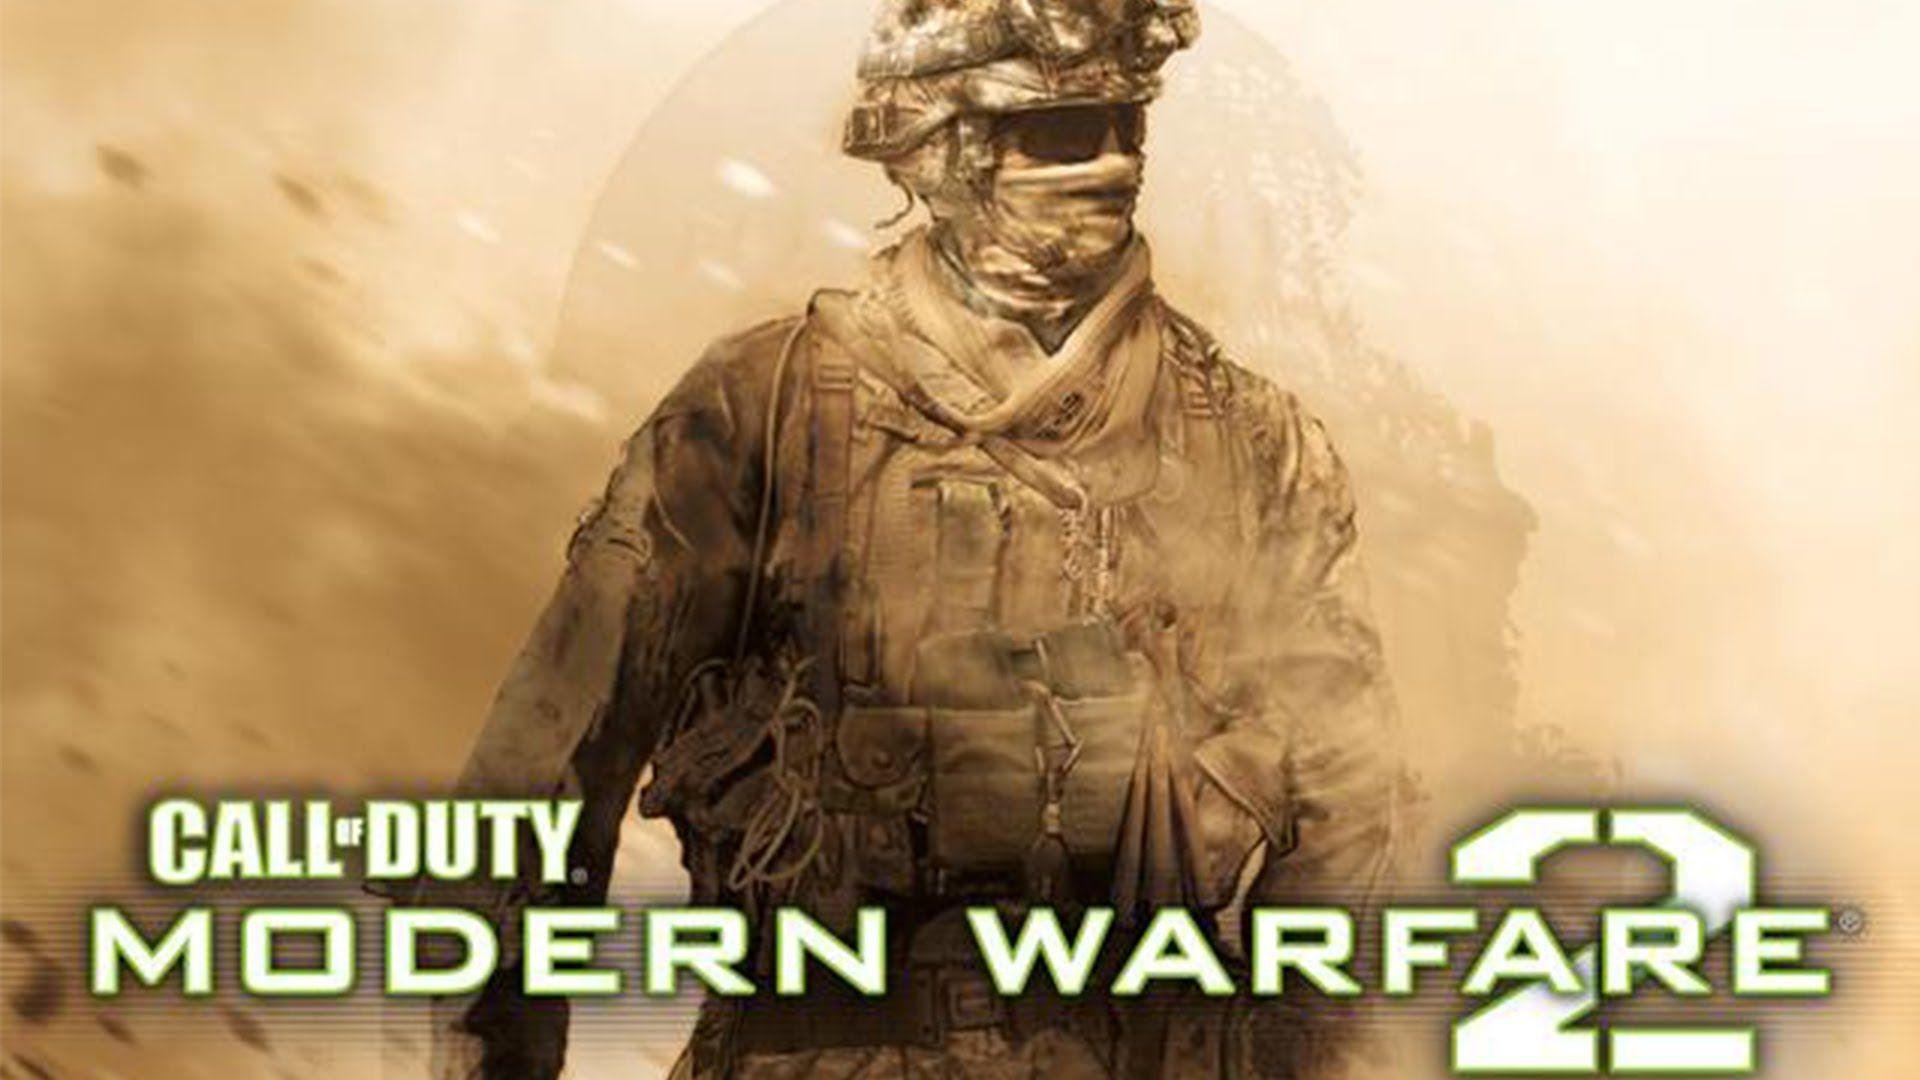 Call of Duty: Modern Warfare 2 Ultra settings gameplay on i5 4570